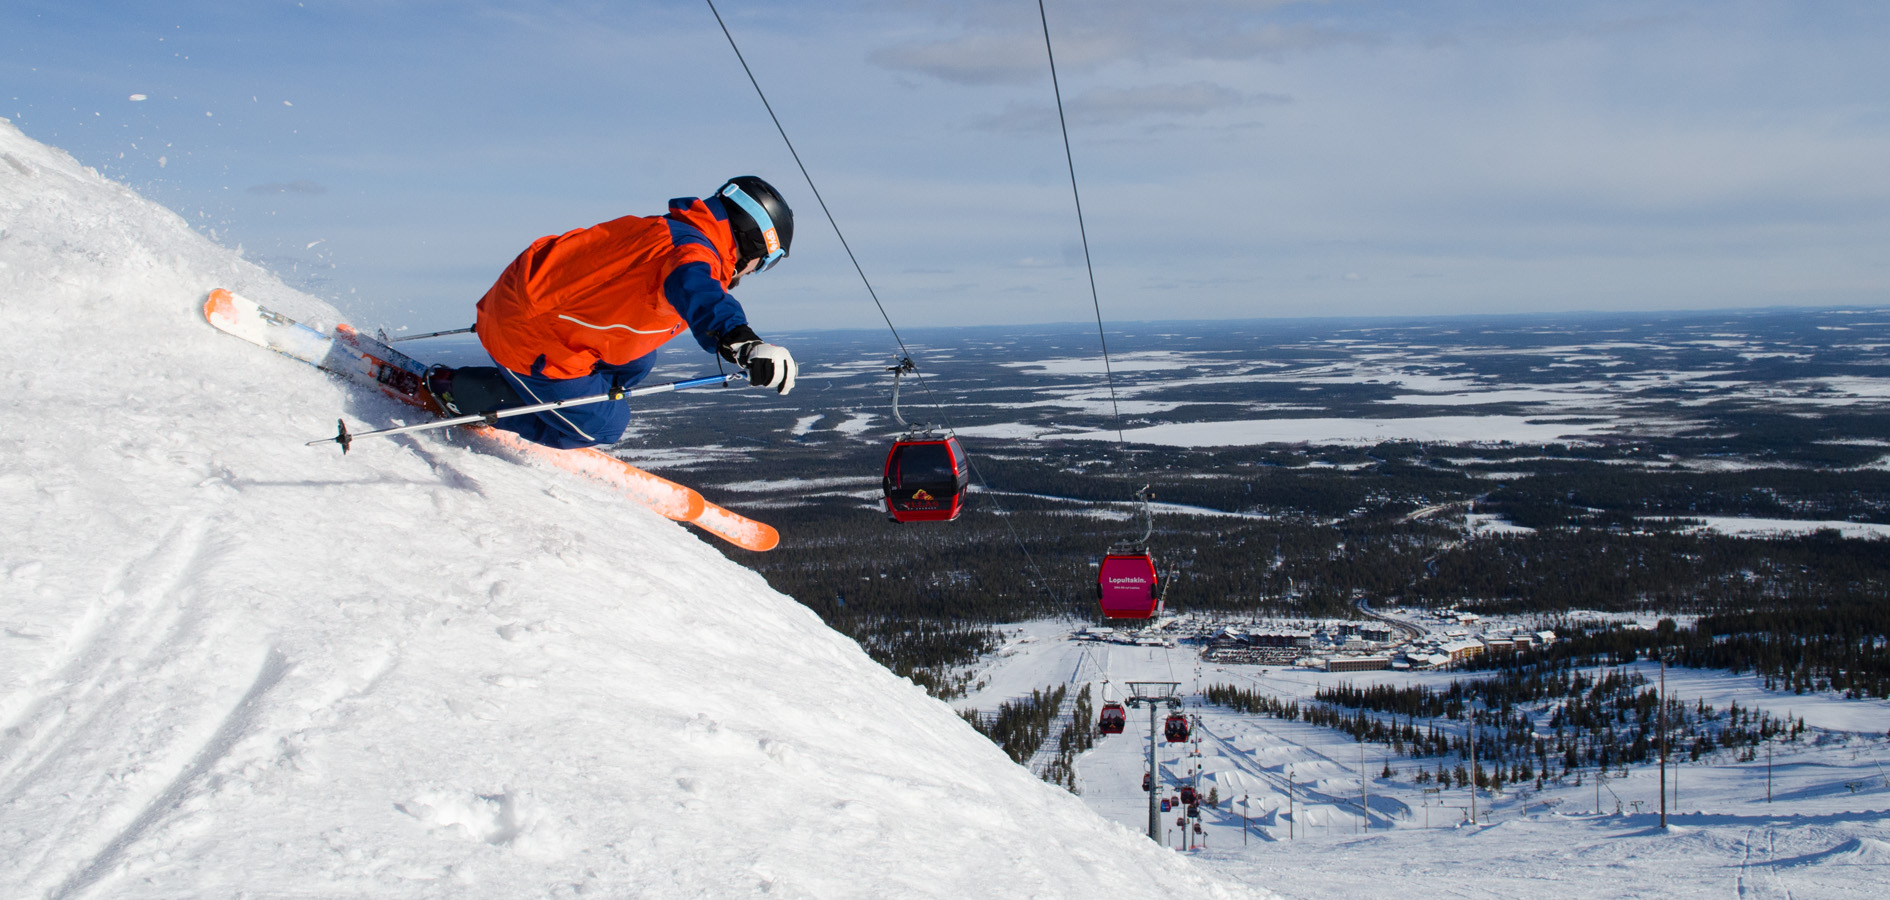 Активные зимние каникулы можно провести на горнолыжных курортах Европы и России.